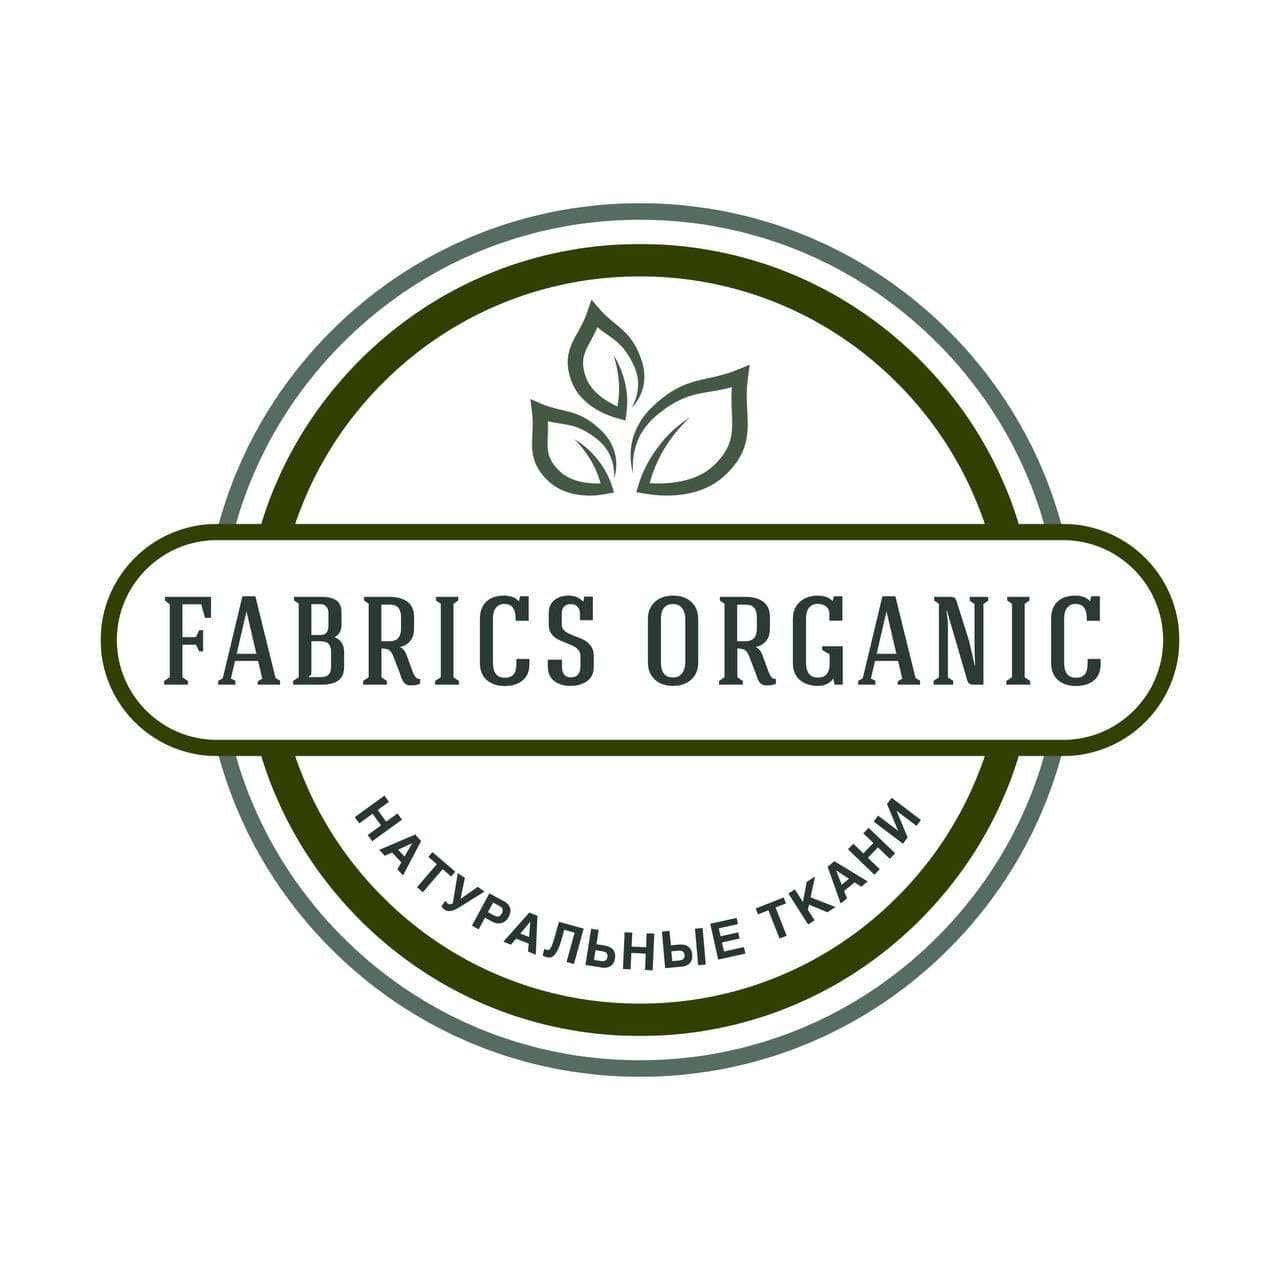 Fabrics organic